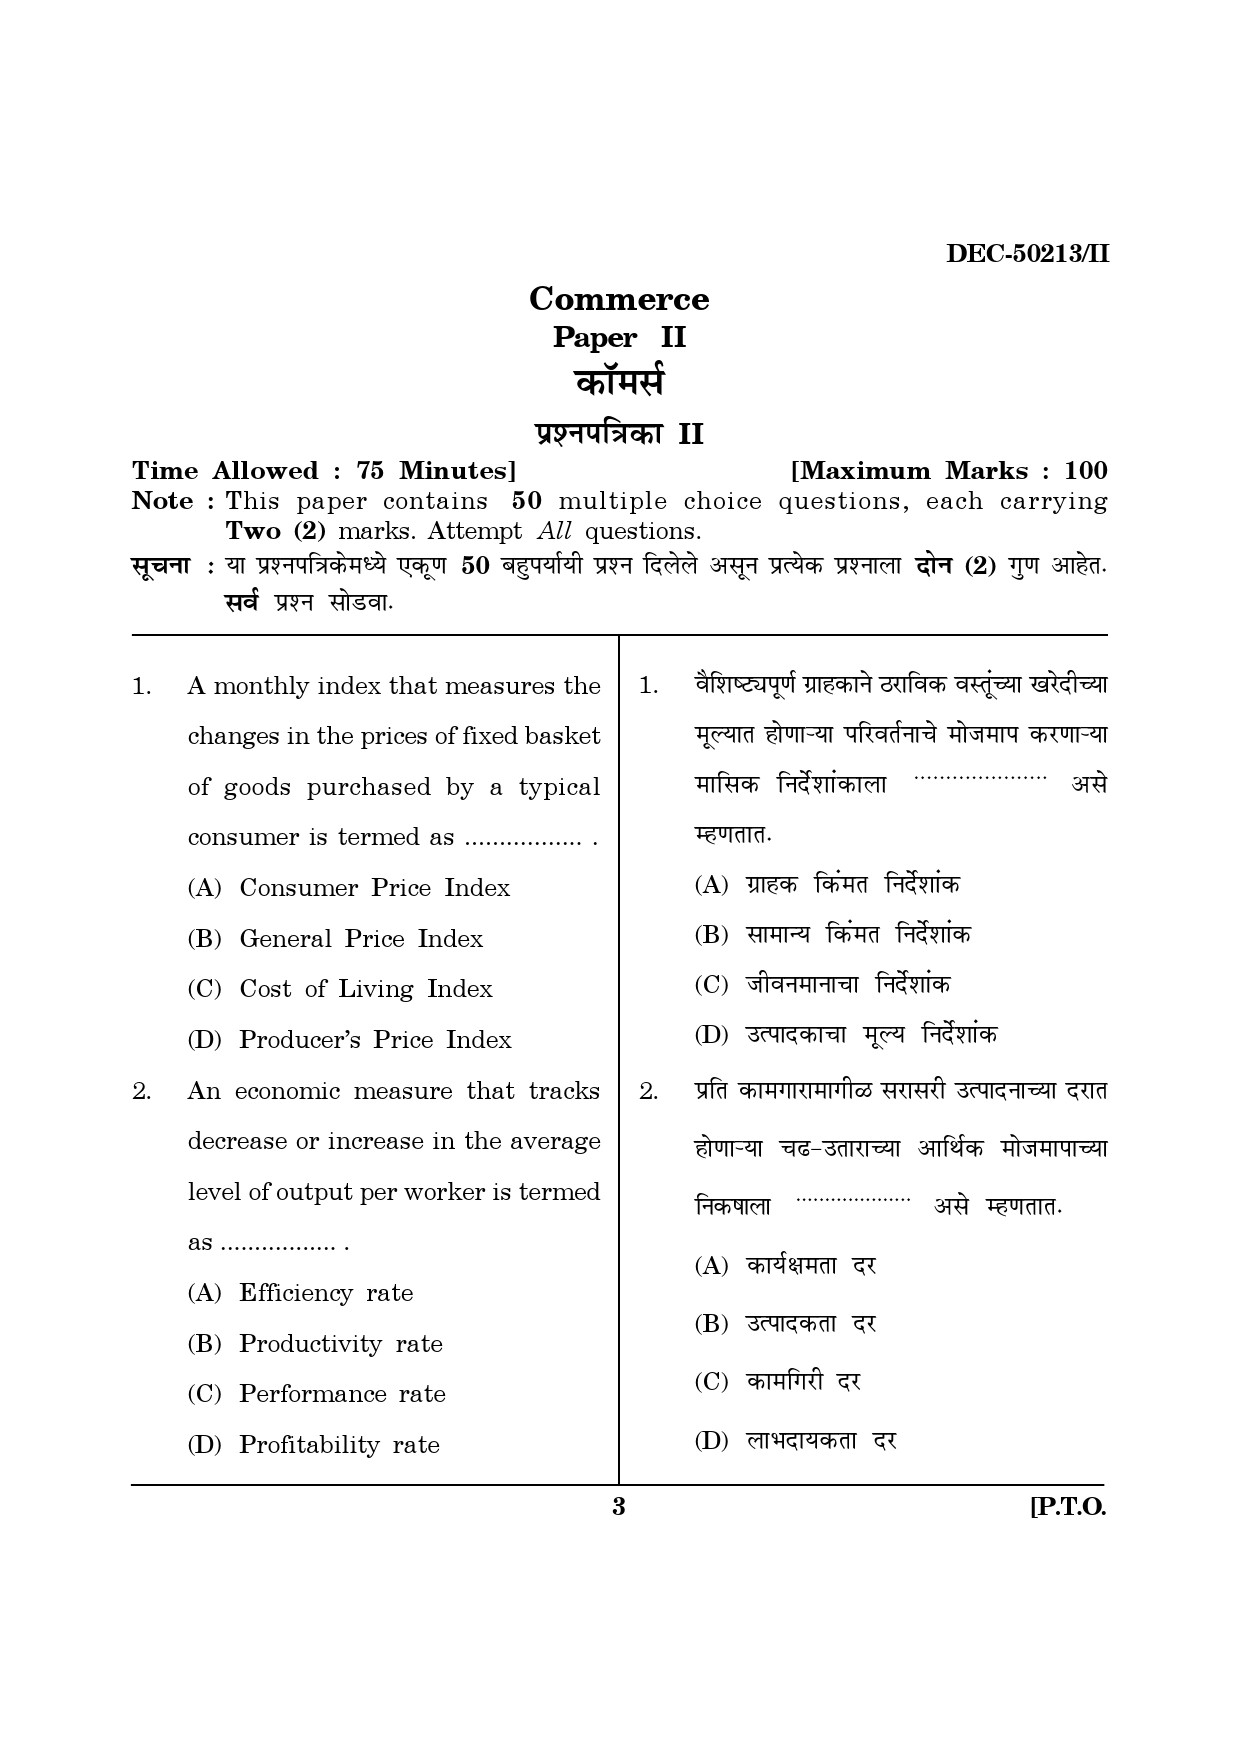 Maharashtra SET Commerce Question Paper II December 2013 2